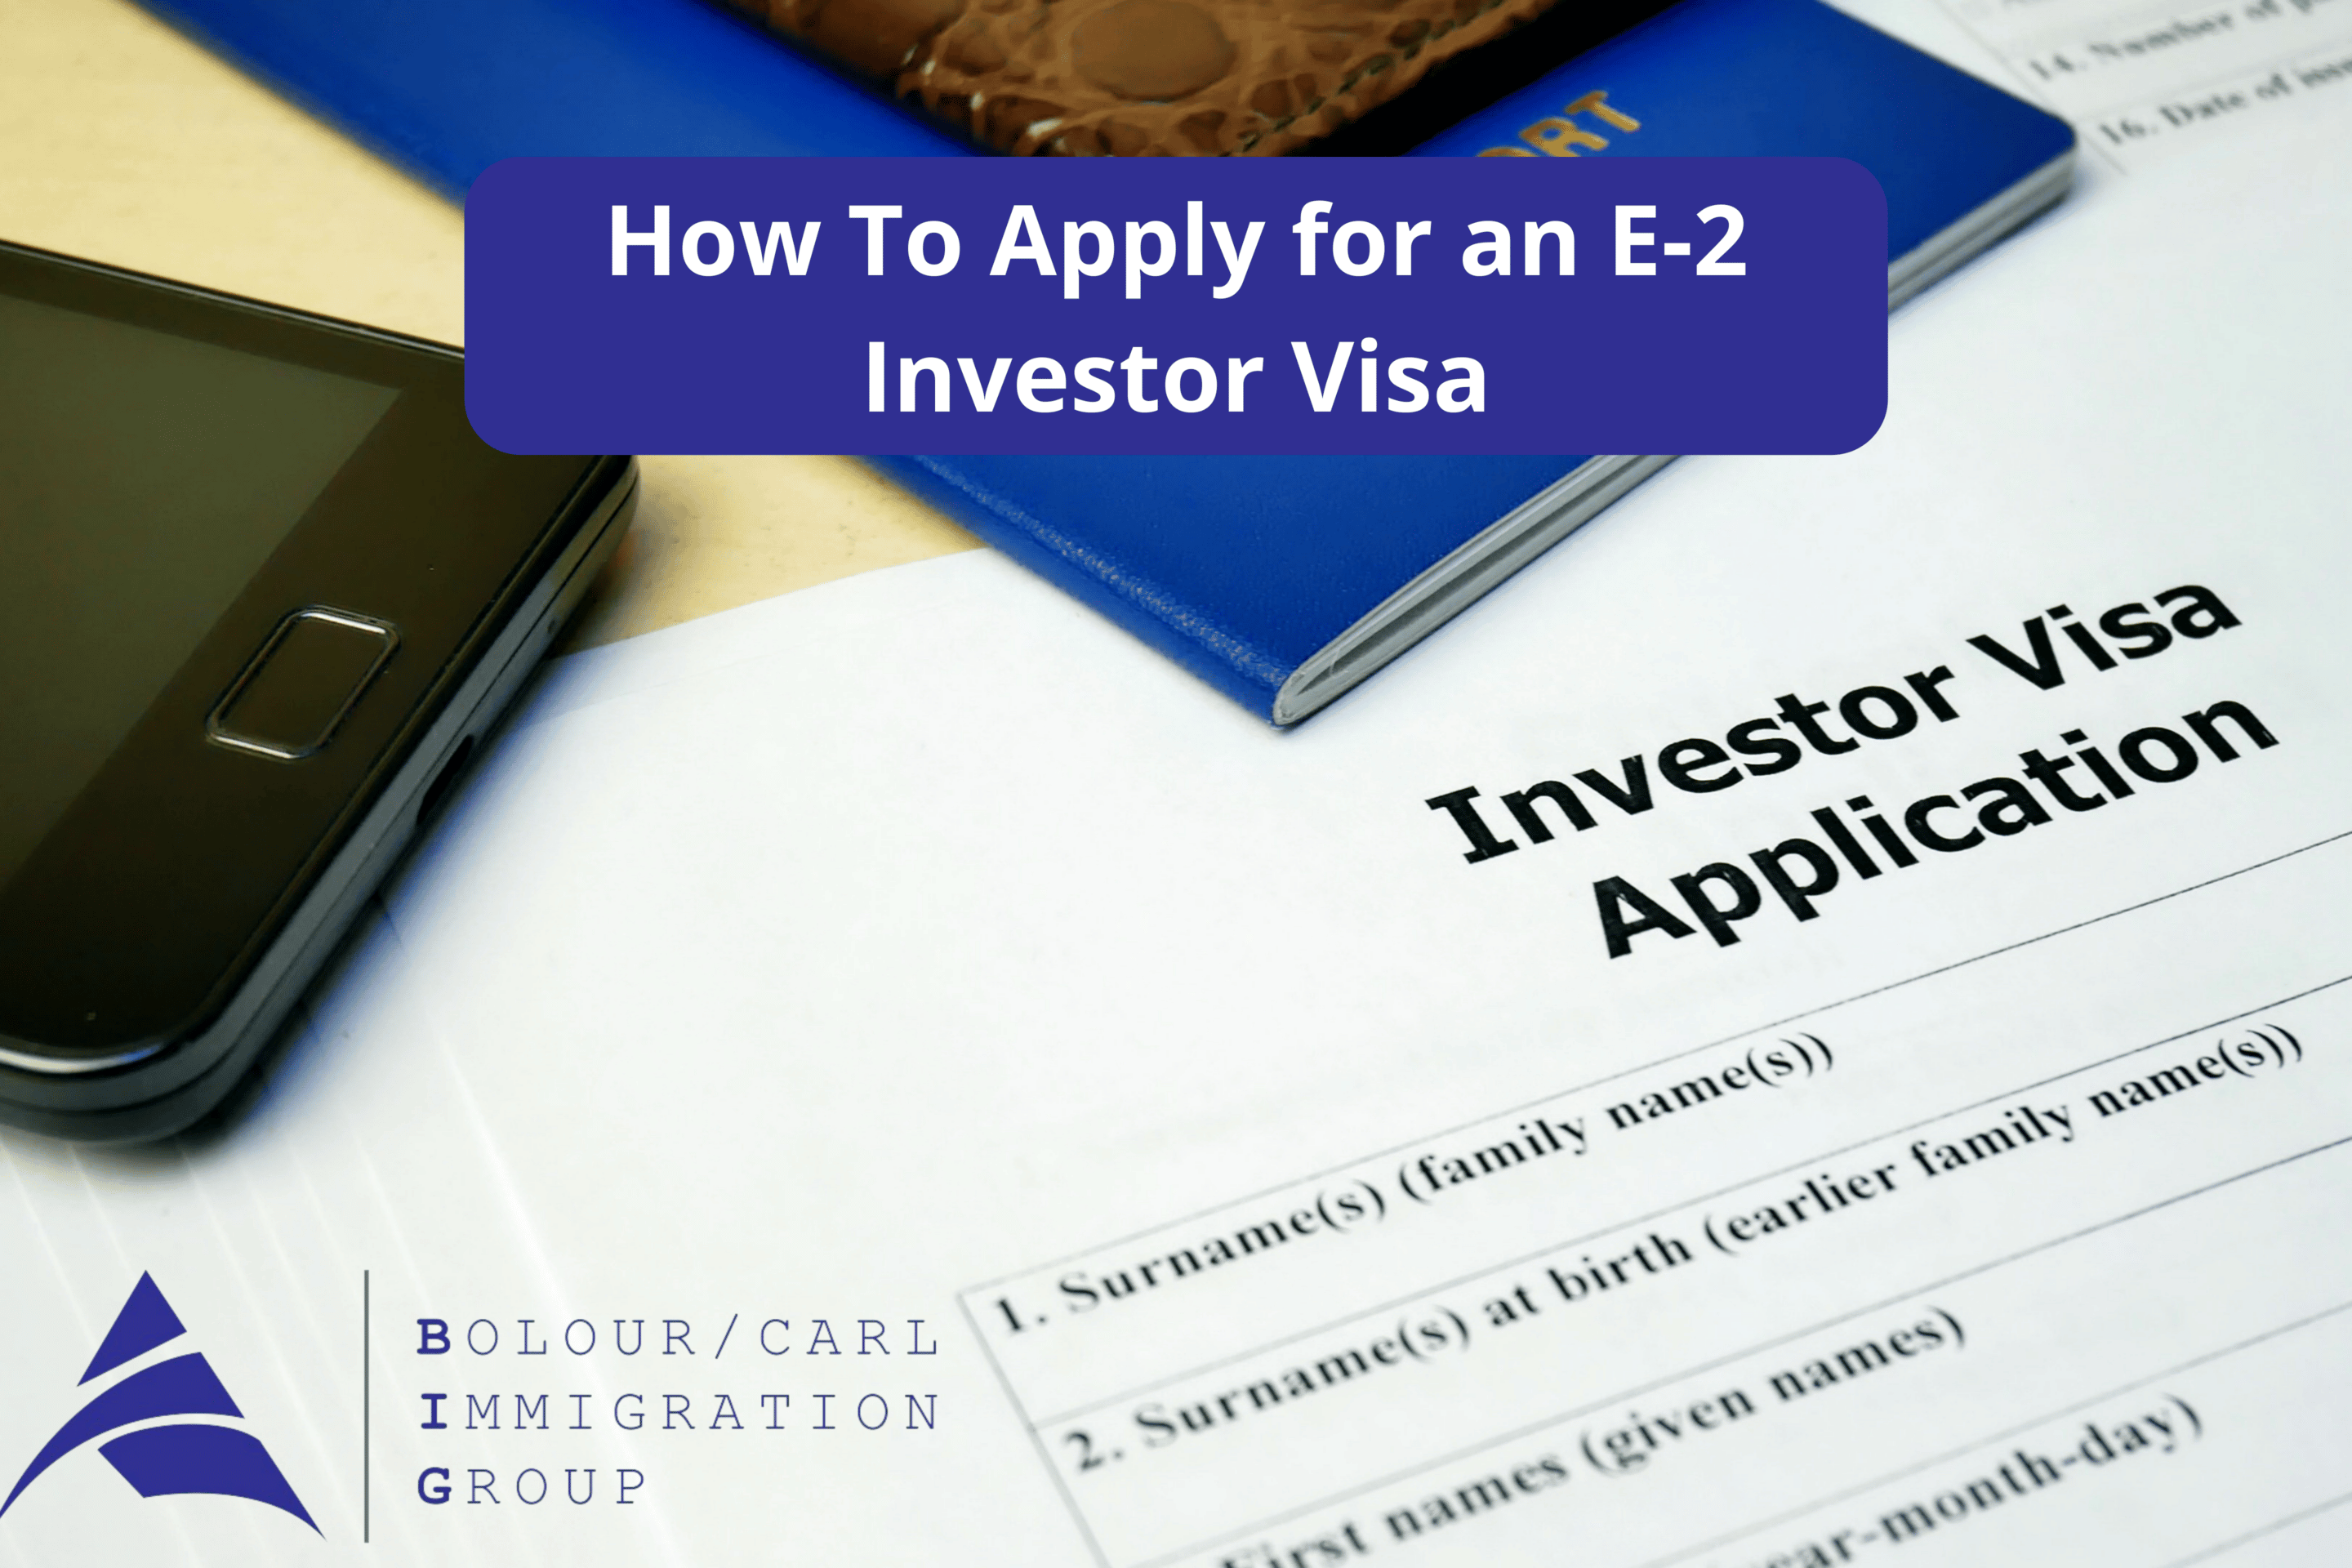 e2 investor visa